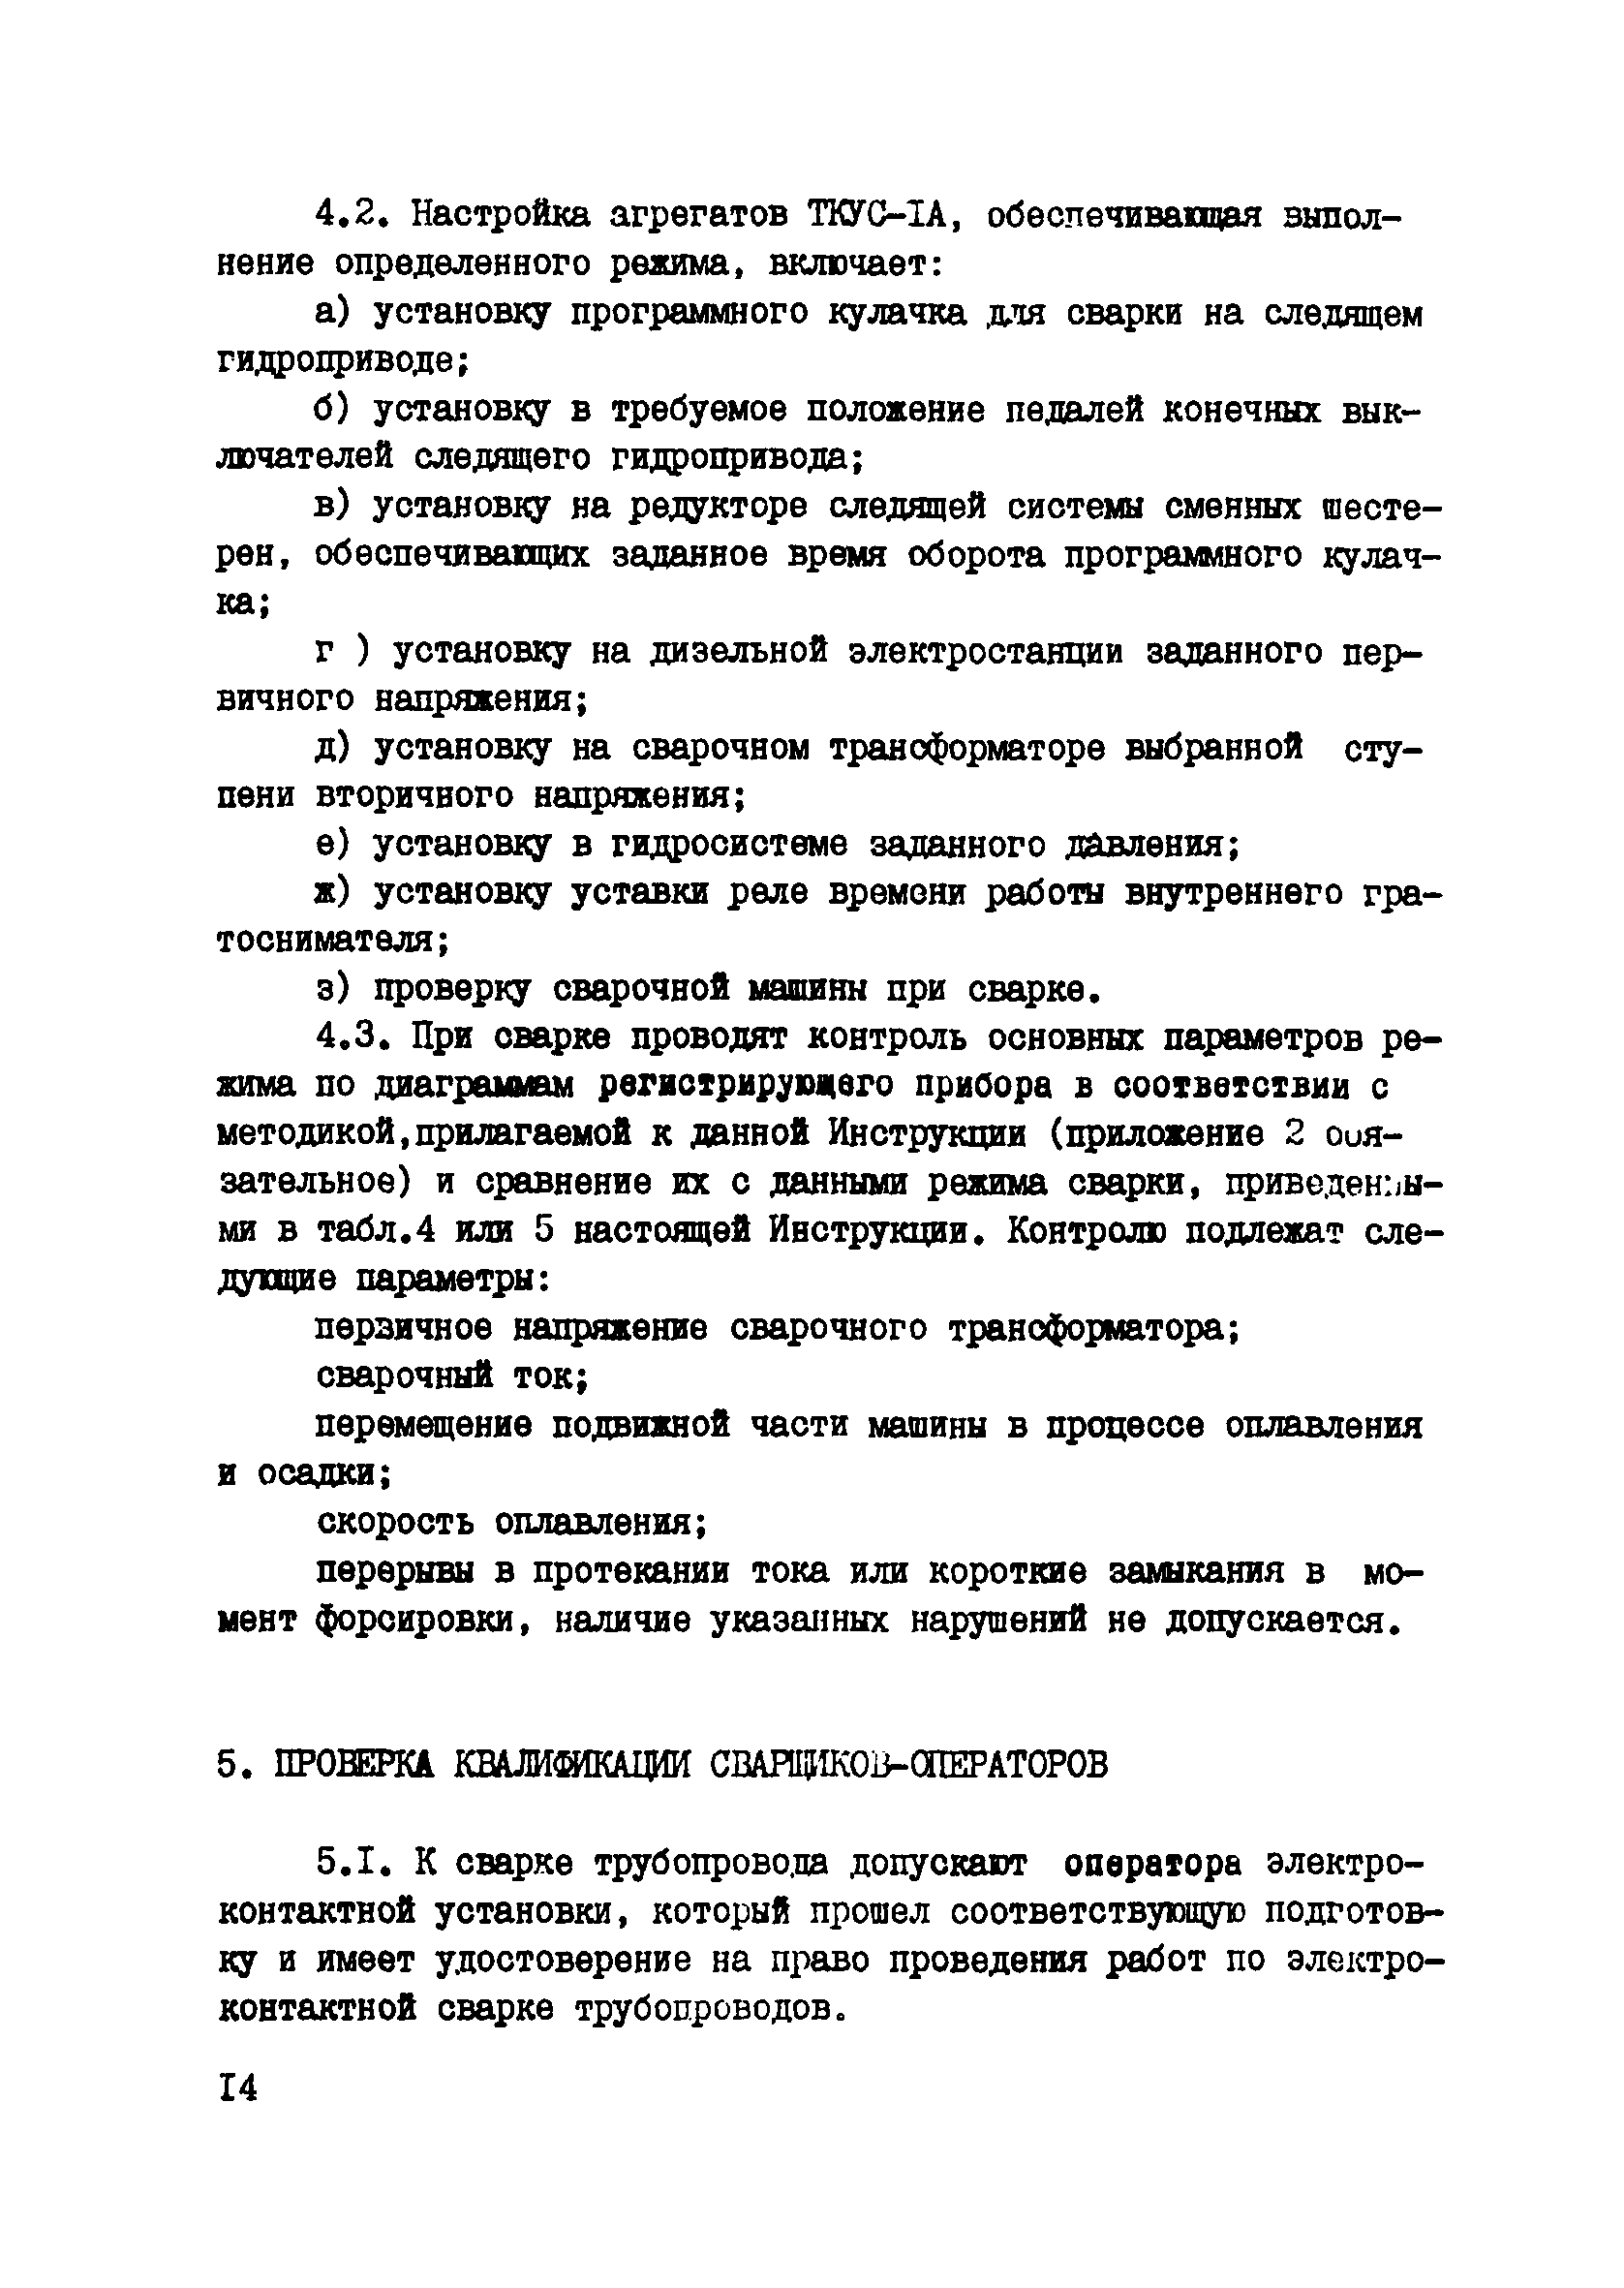 ВСН 2-139-82